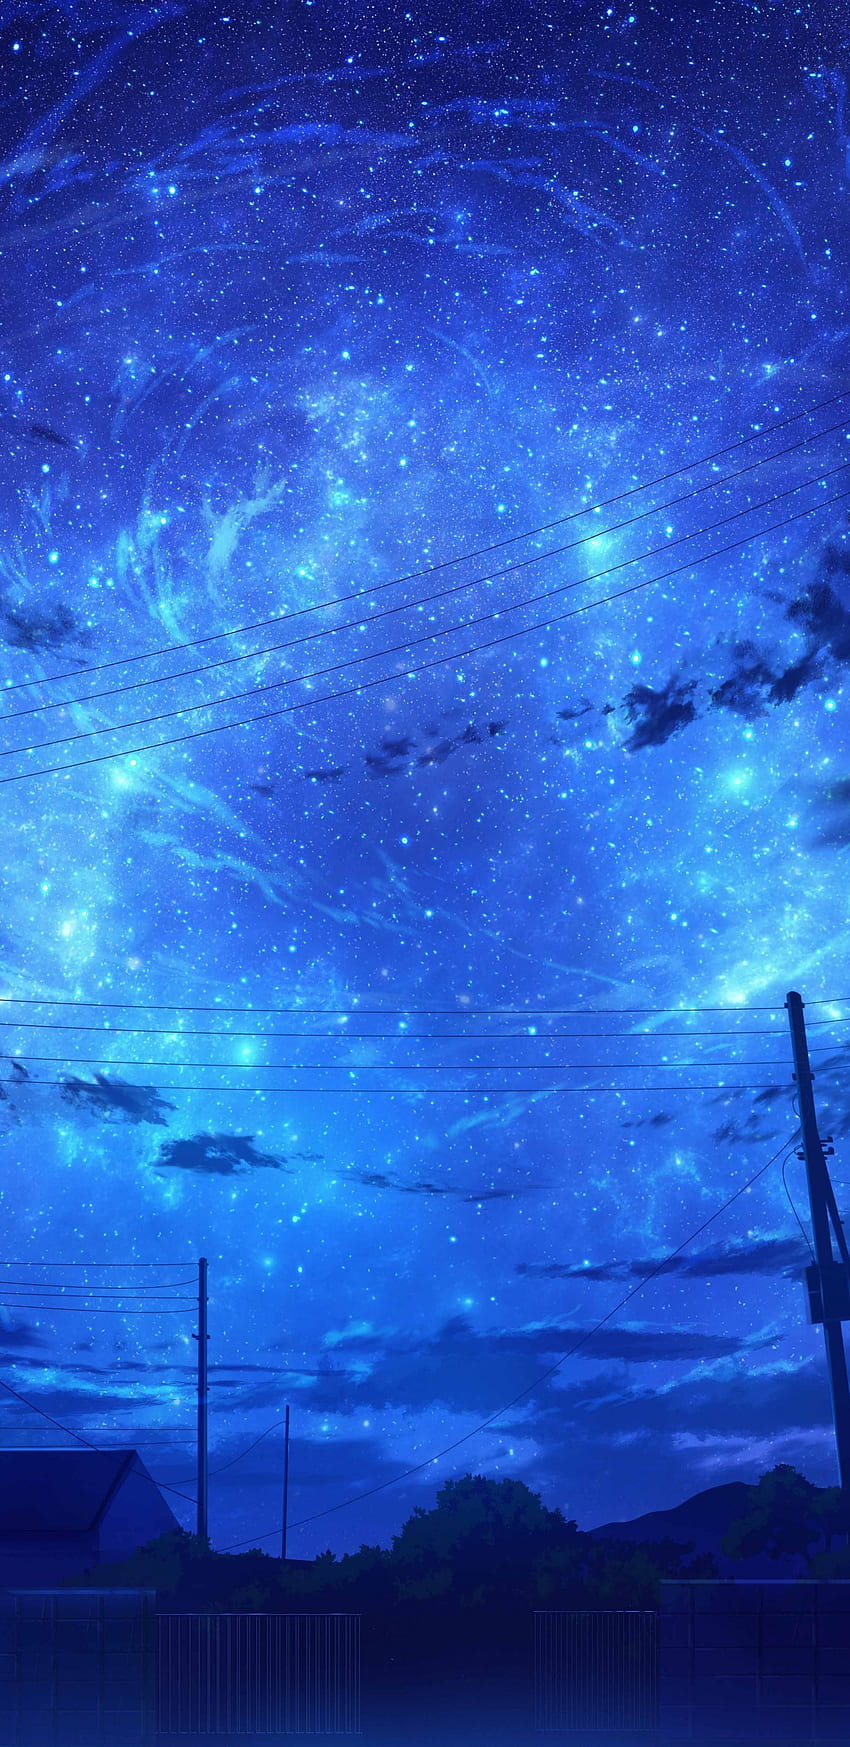 Anime Kraj, Błękitne niebo, Chmury, Sceneria, Gwiaździsta noc dla Samsung Galaxy S9, Note 9, S8, S8+, Google Pixel 3 XL - Maiden Tapeta na telefon HD